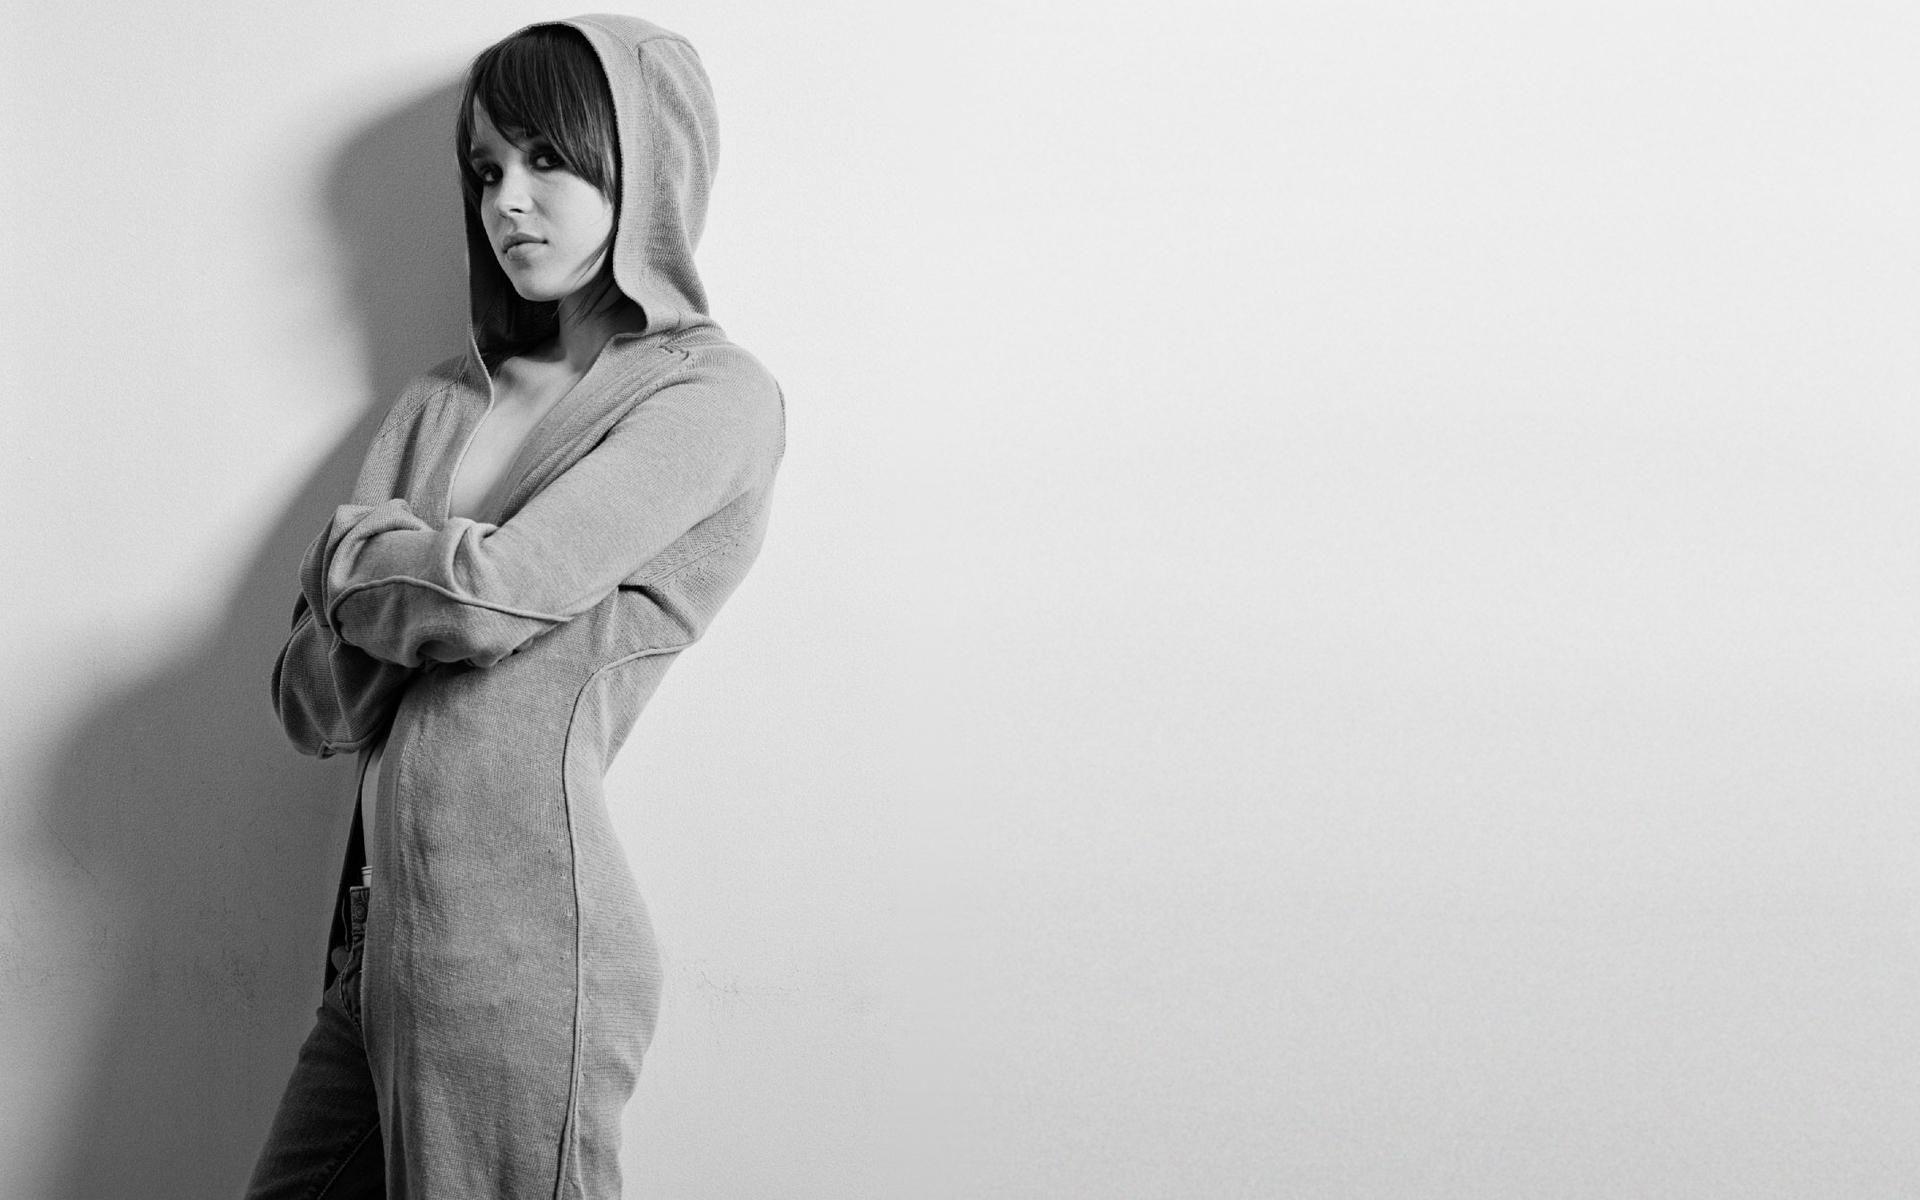 women, Ellen Page, actress, hoodies wallpaper